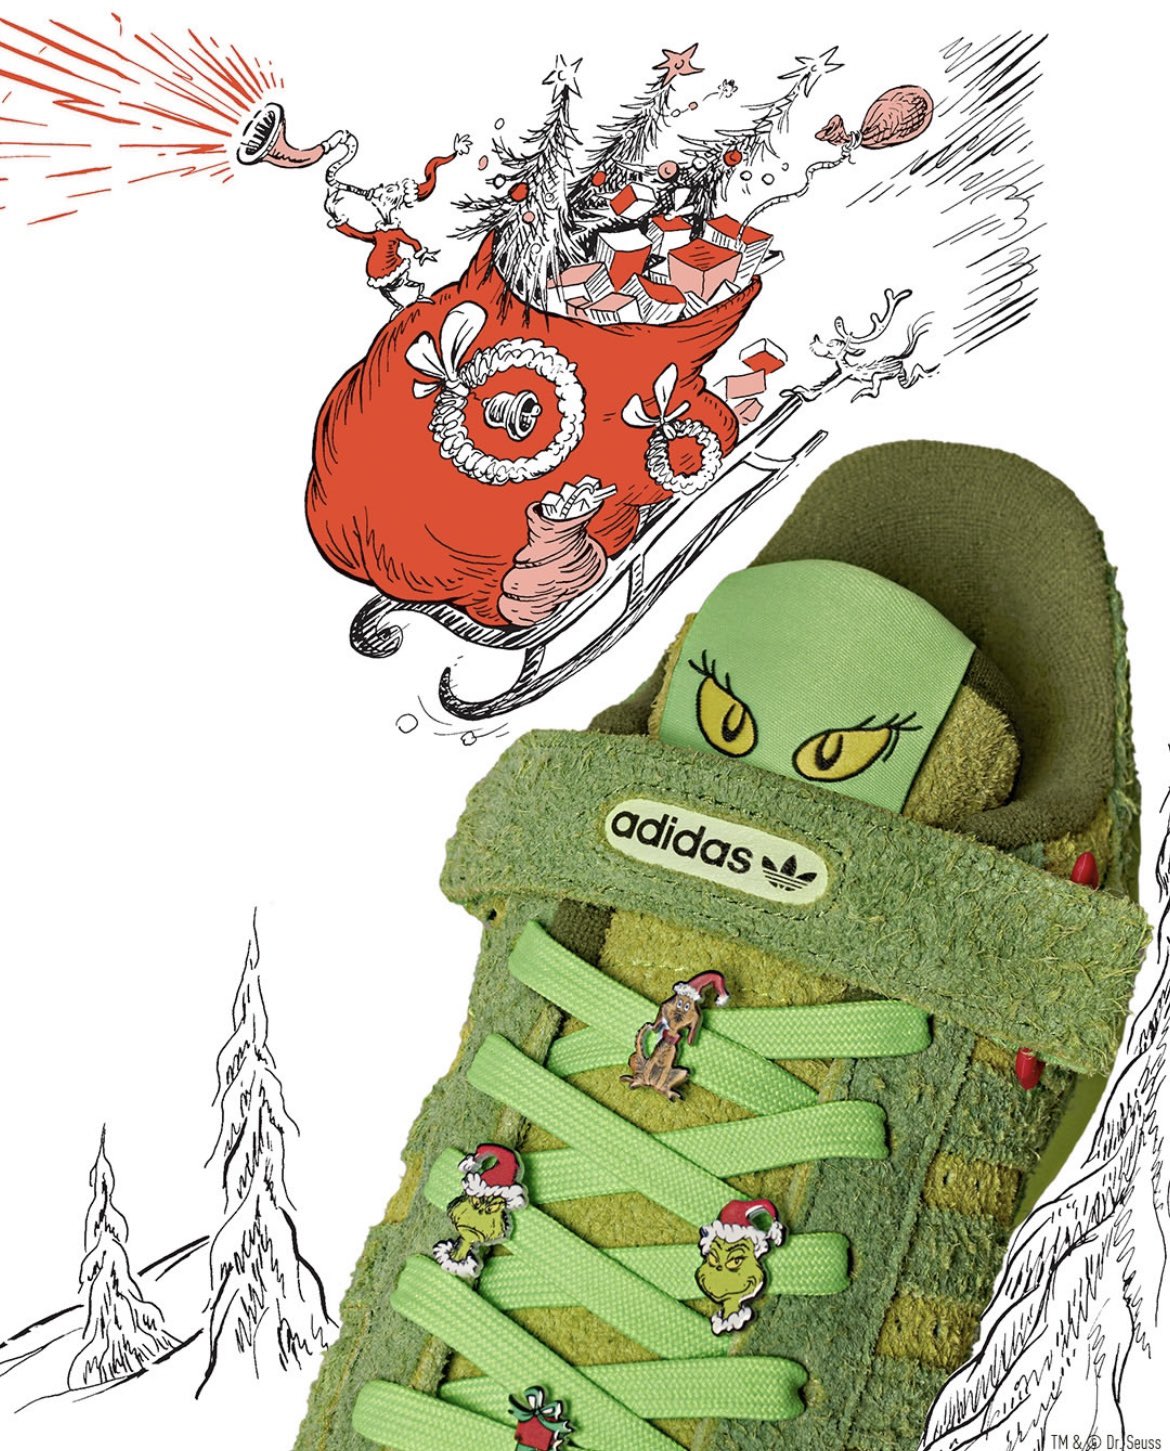 Festival Aventurarse promoción Se confirma que la colección de zapatillas adidas Originals x The Grinch  llega a Perú - Surtido